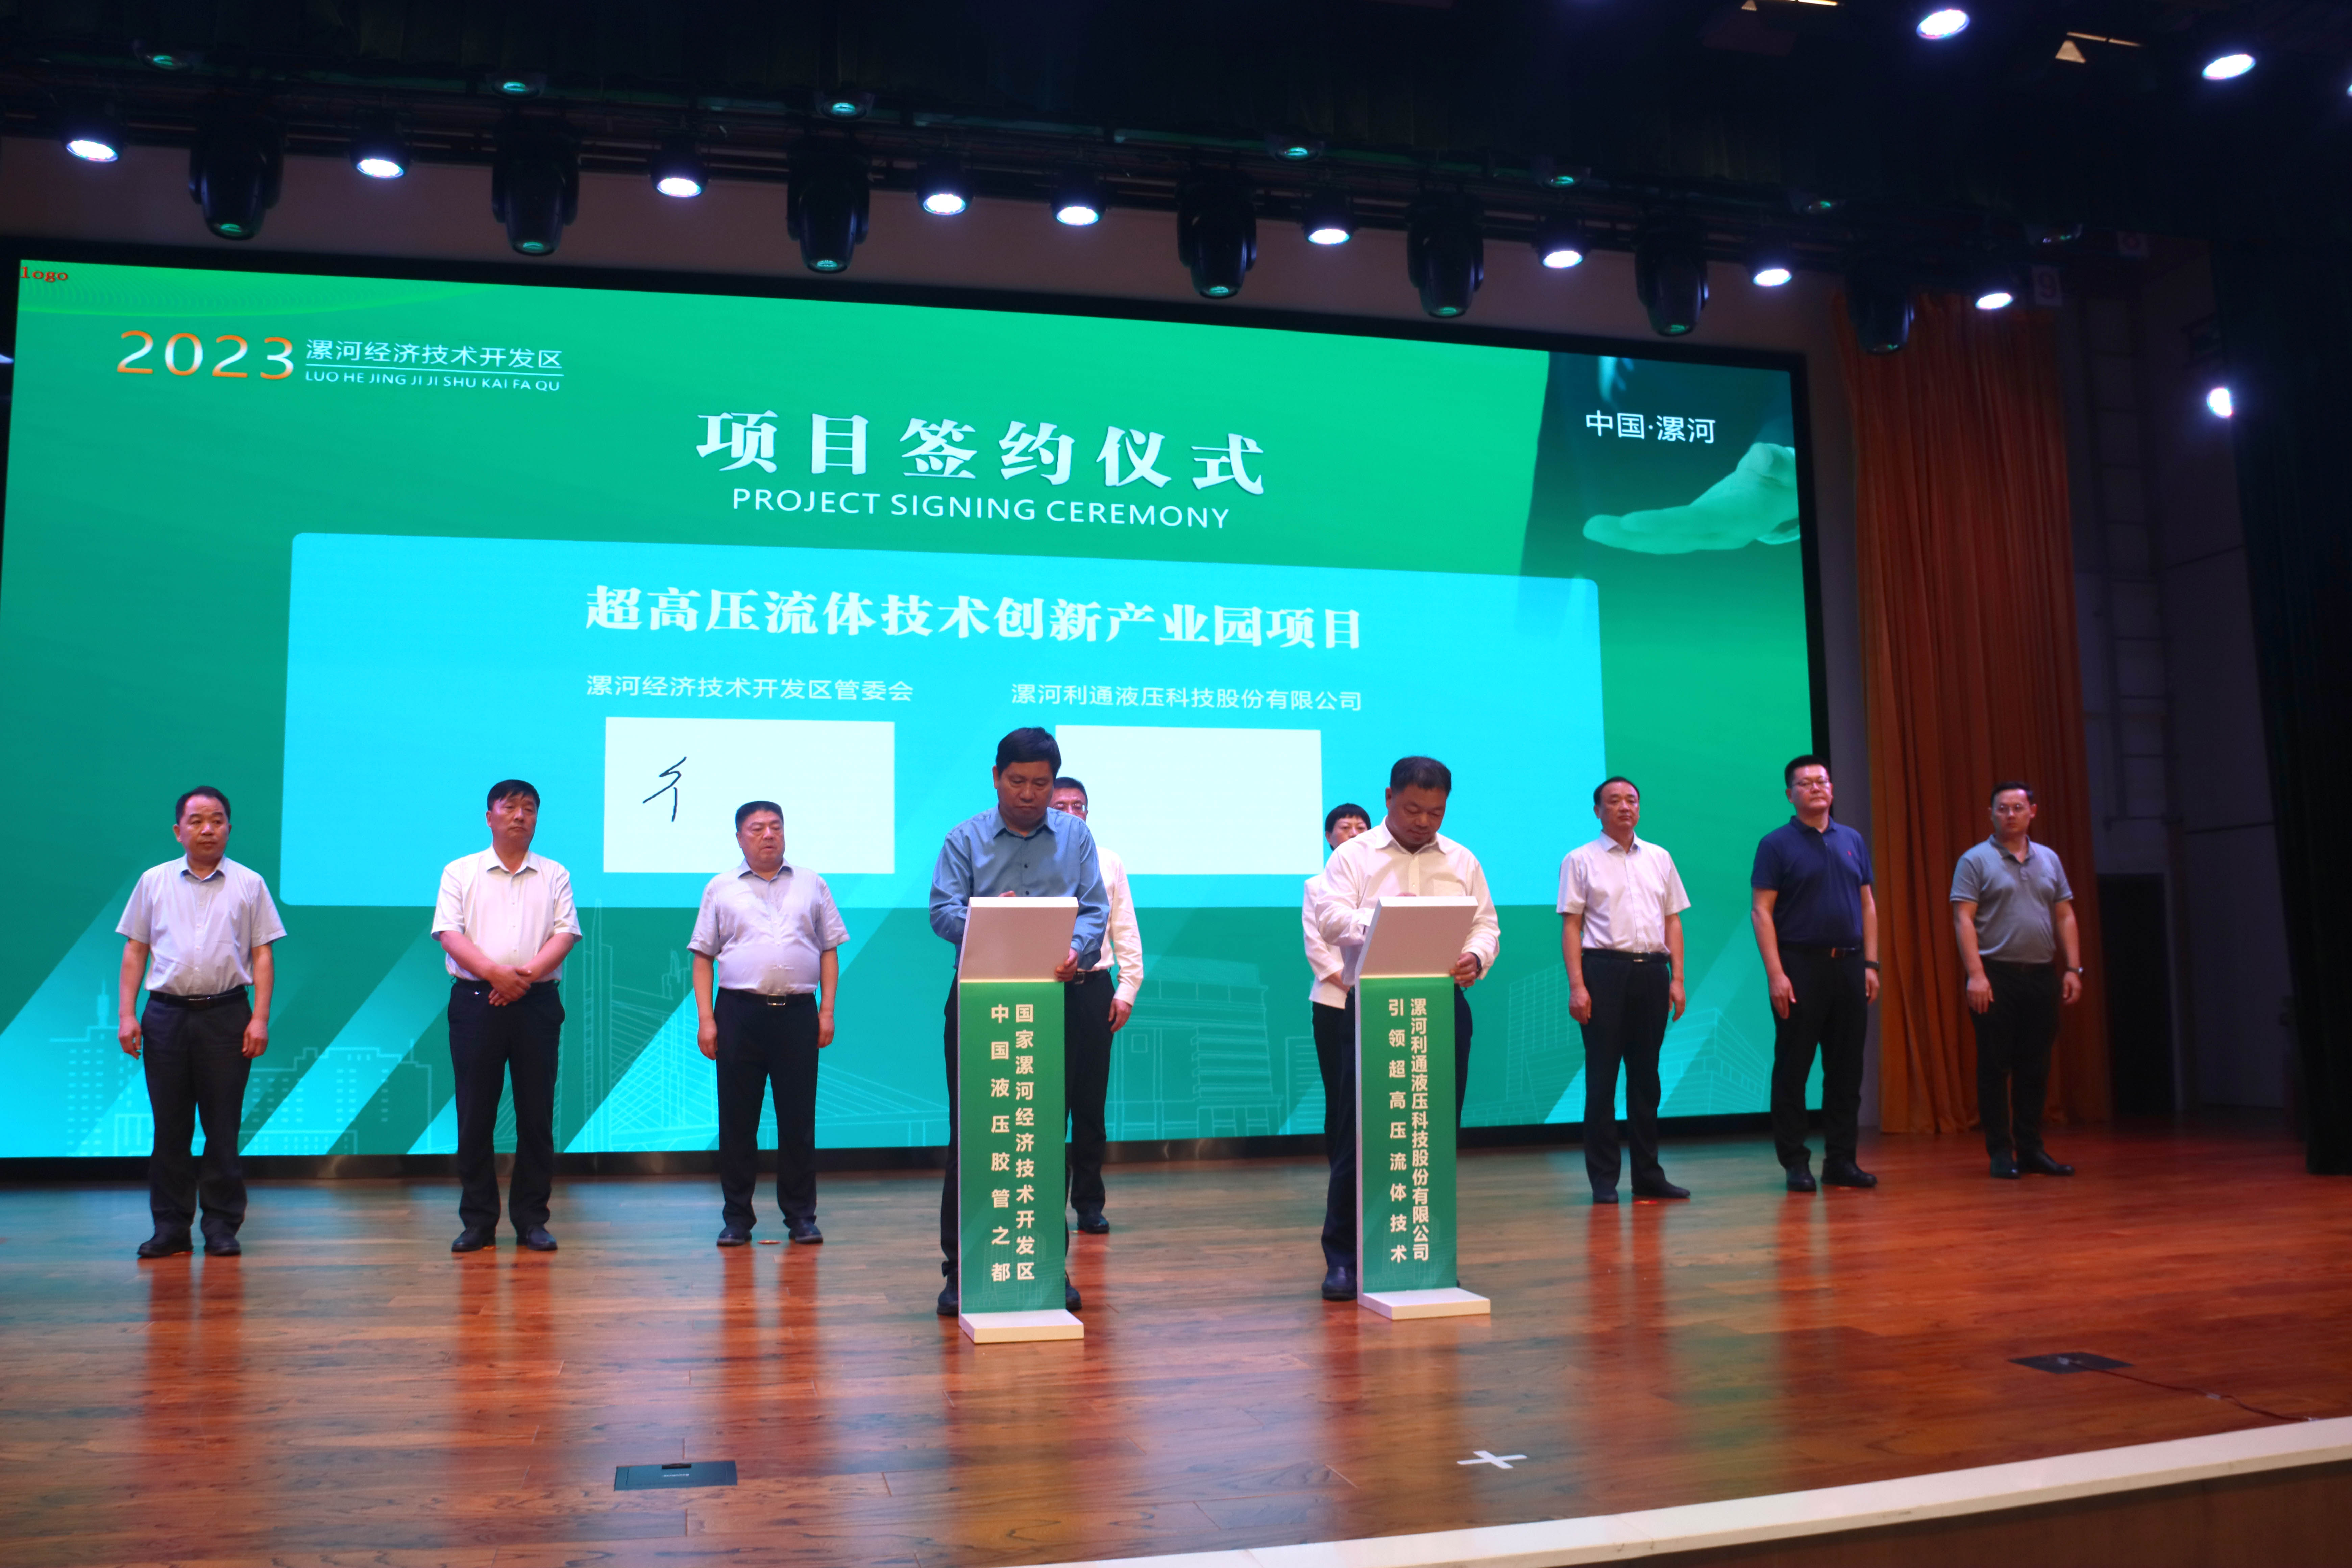 2023年6月6日利通科技与天津通洁签署战略合作协议，在超高压应用领域达成深度合作.jpg